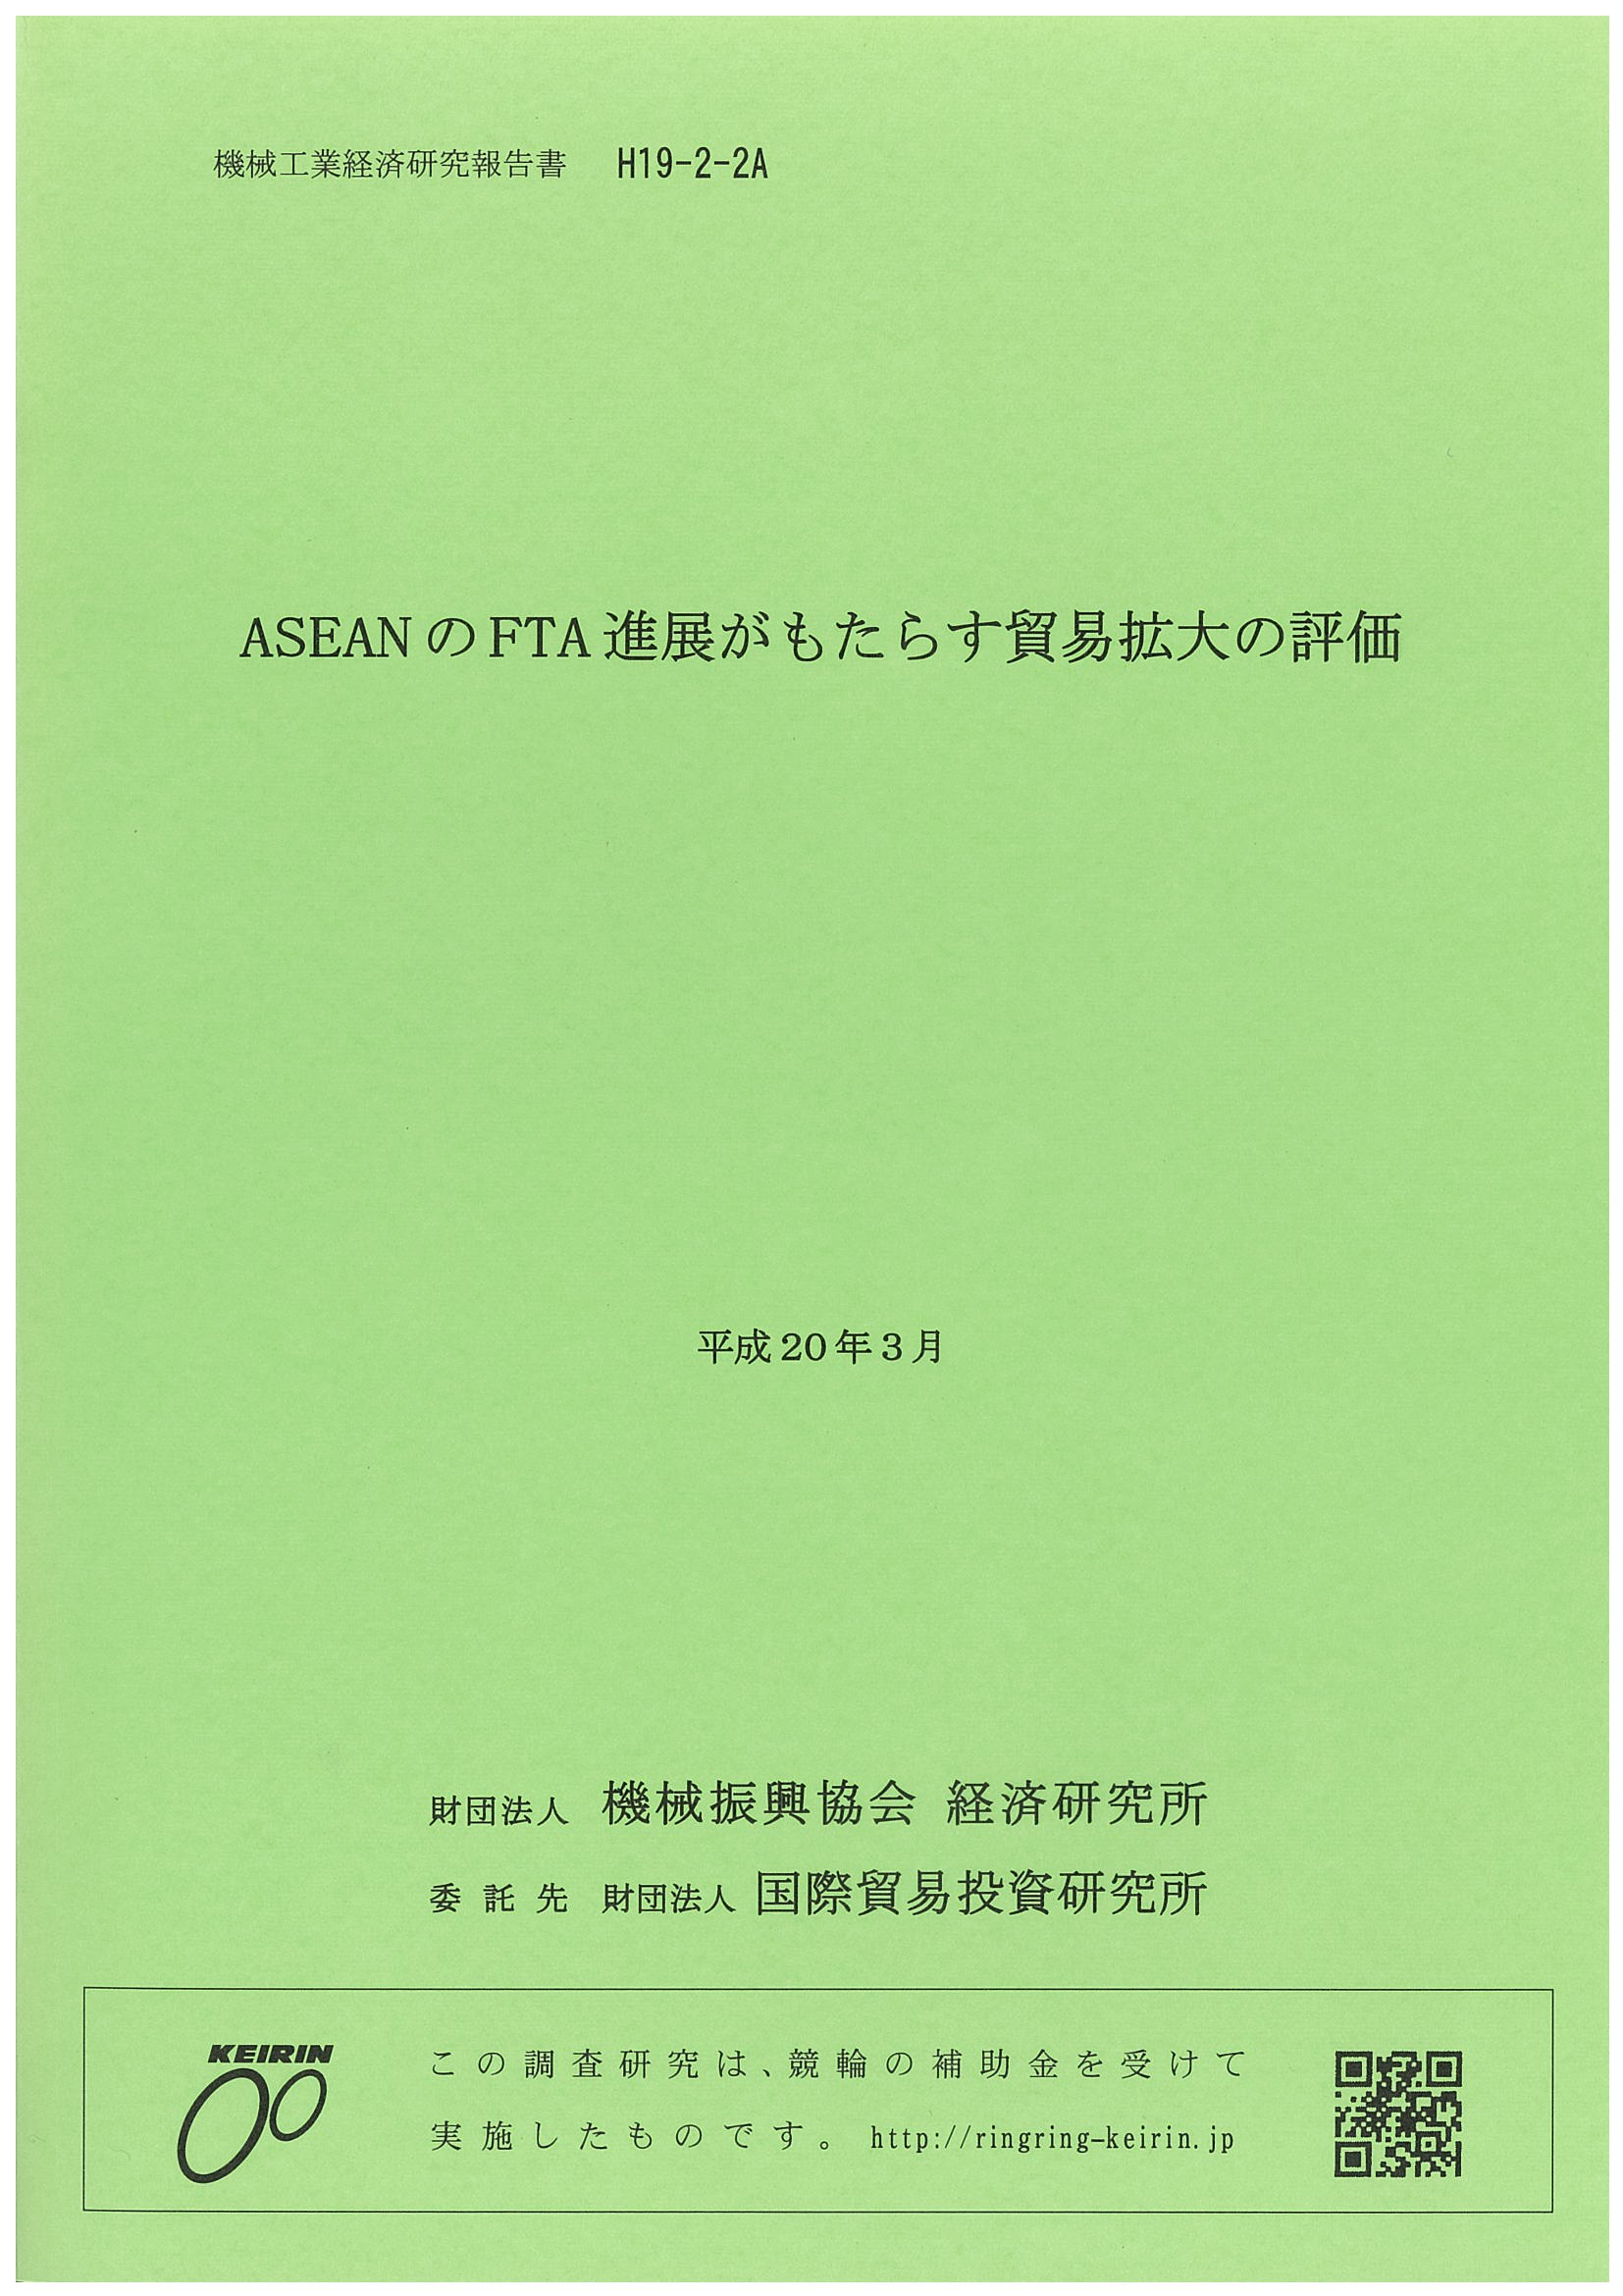 H19-2-2A_ASEAN_FTA.jpg